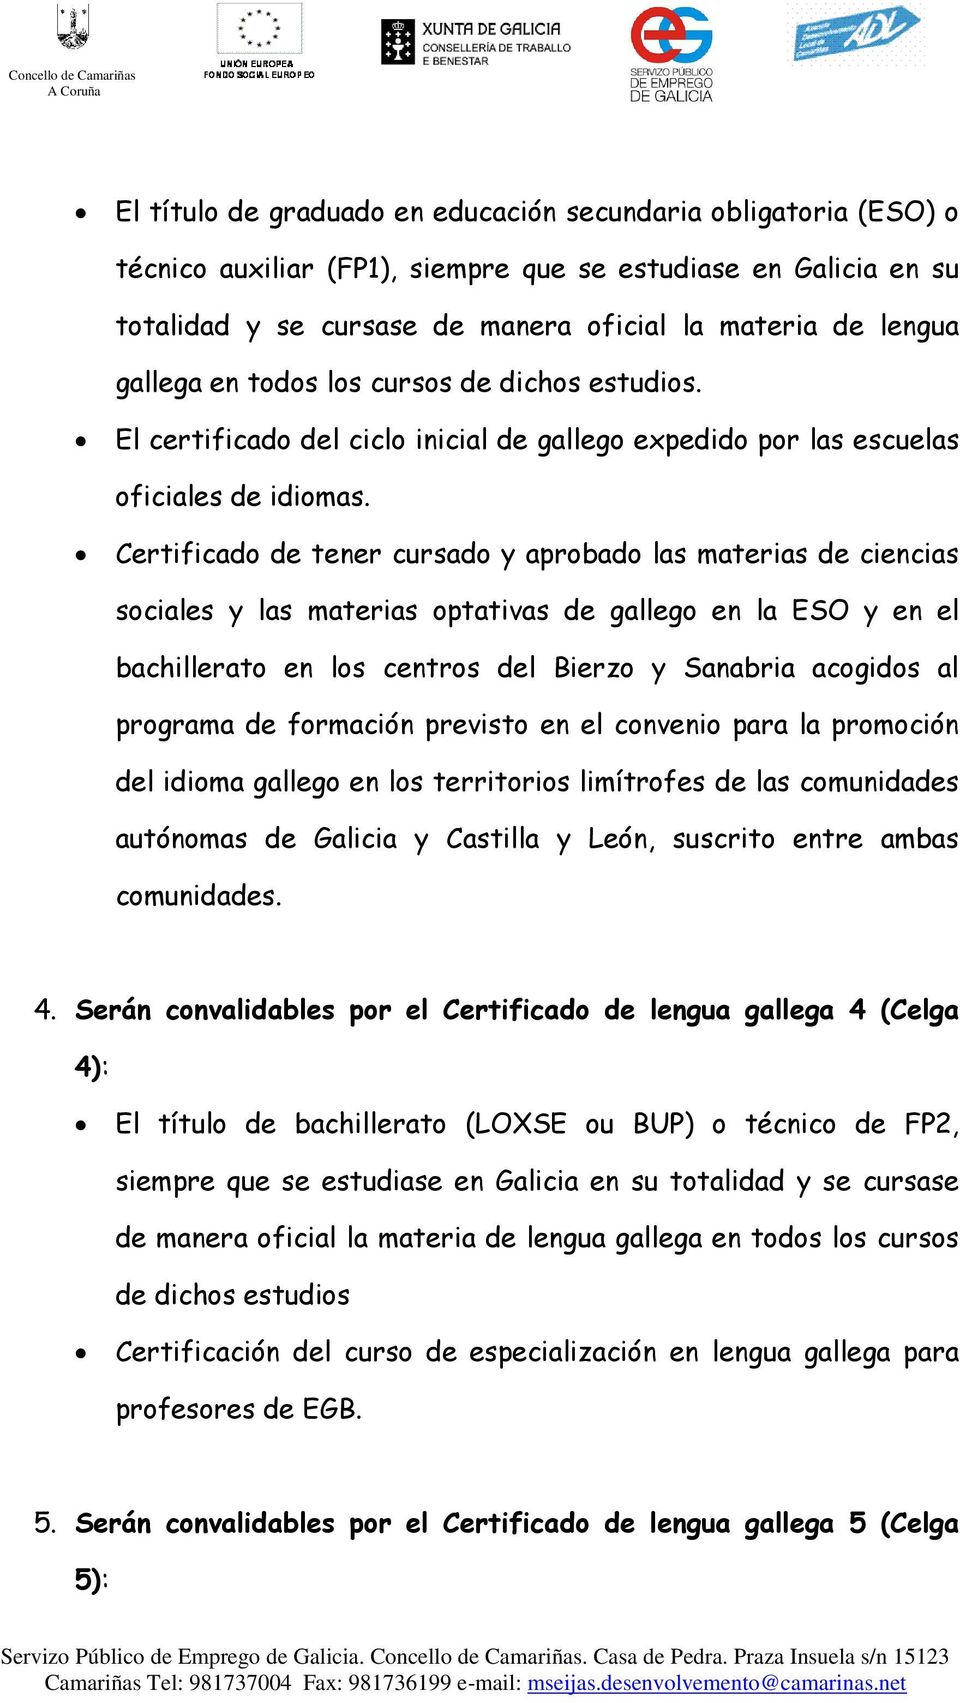 Certificado de tener cursado y aprobado las materias de ciencias sociales y las materias optativas de gallego en la ESO y en el bachillerato en los centros del Bierzo y Sanabria acogidos al programa